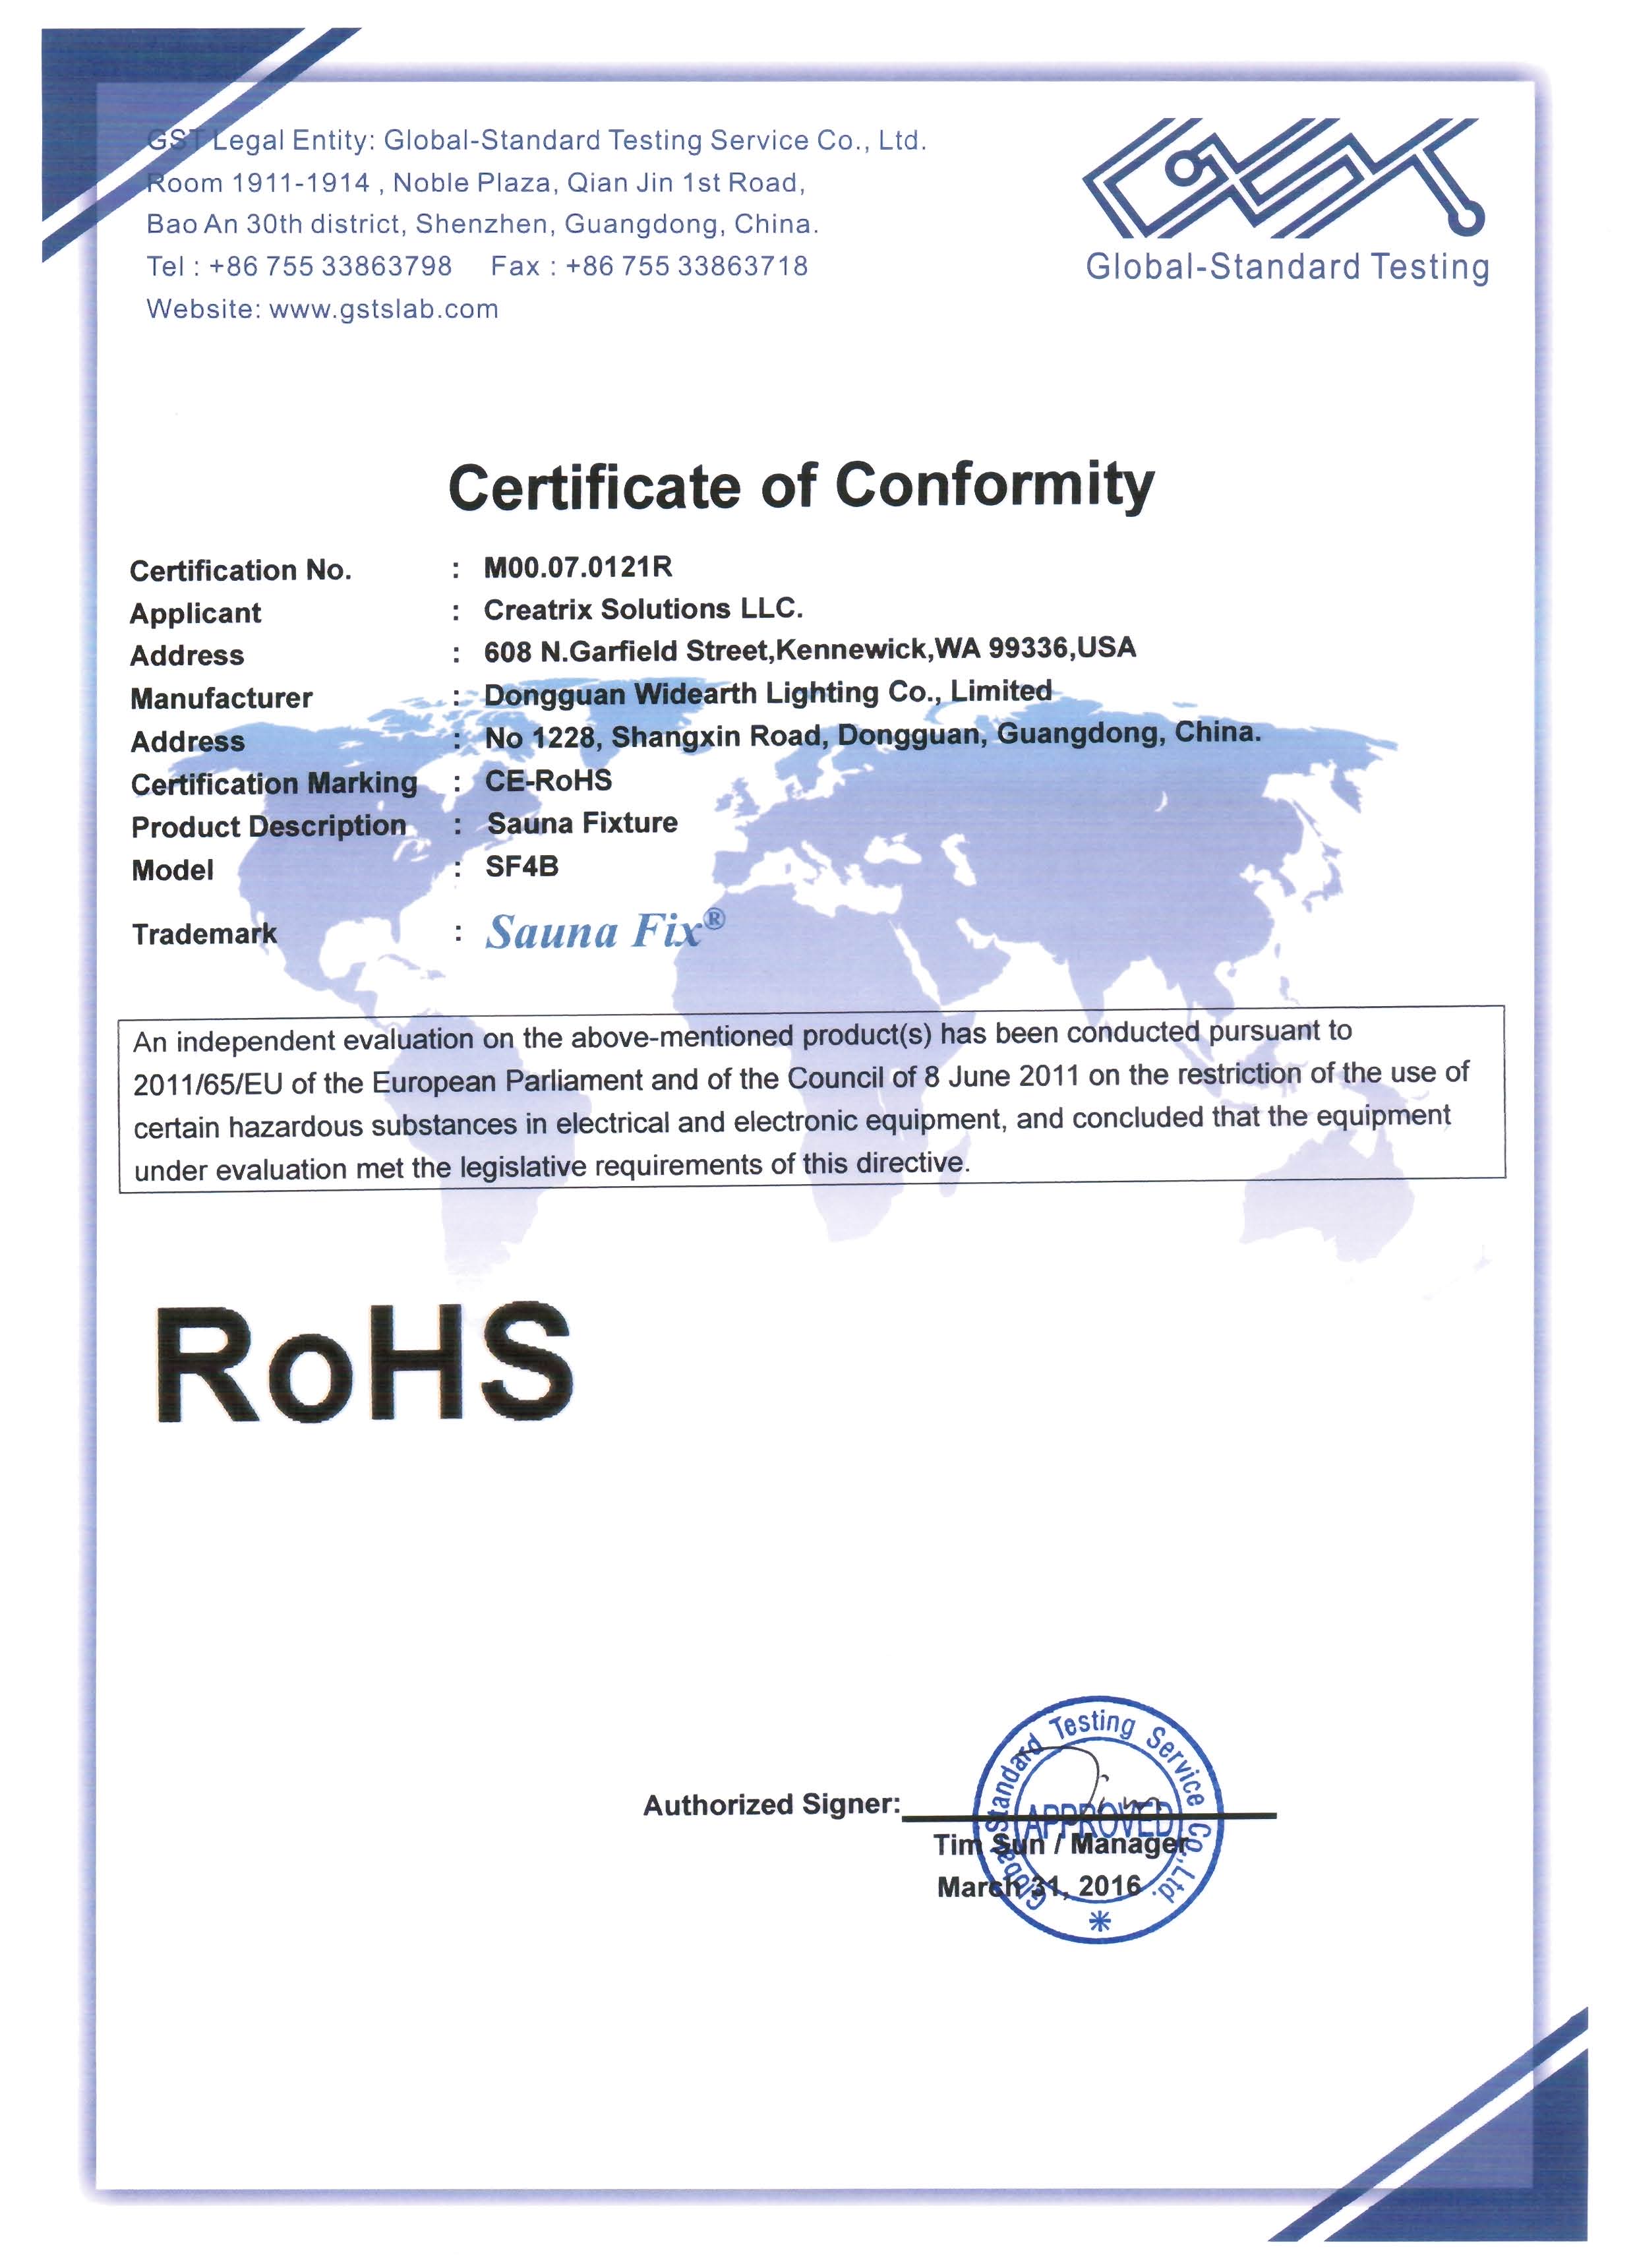 Sauna Fix USA ROHS Certificate